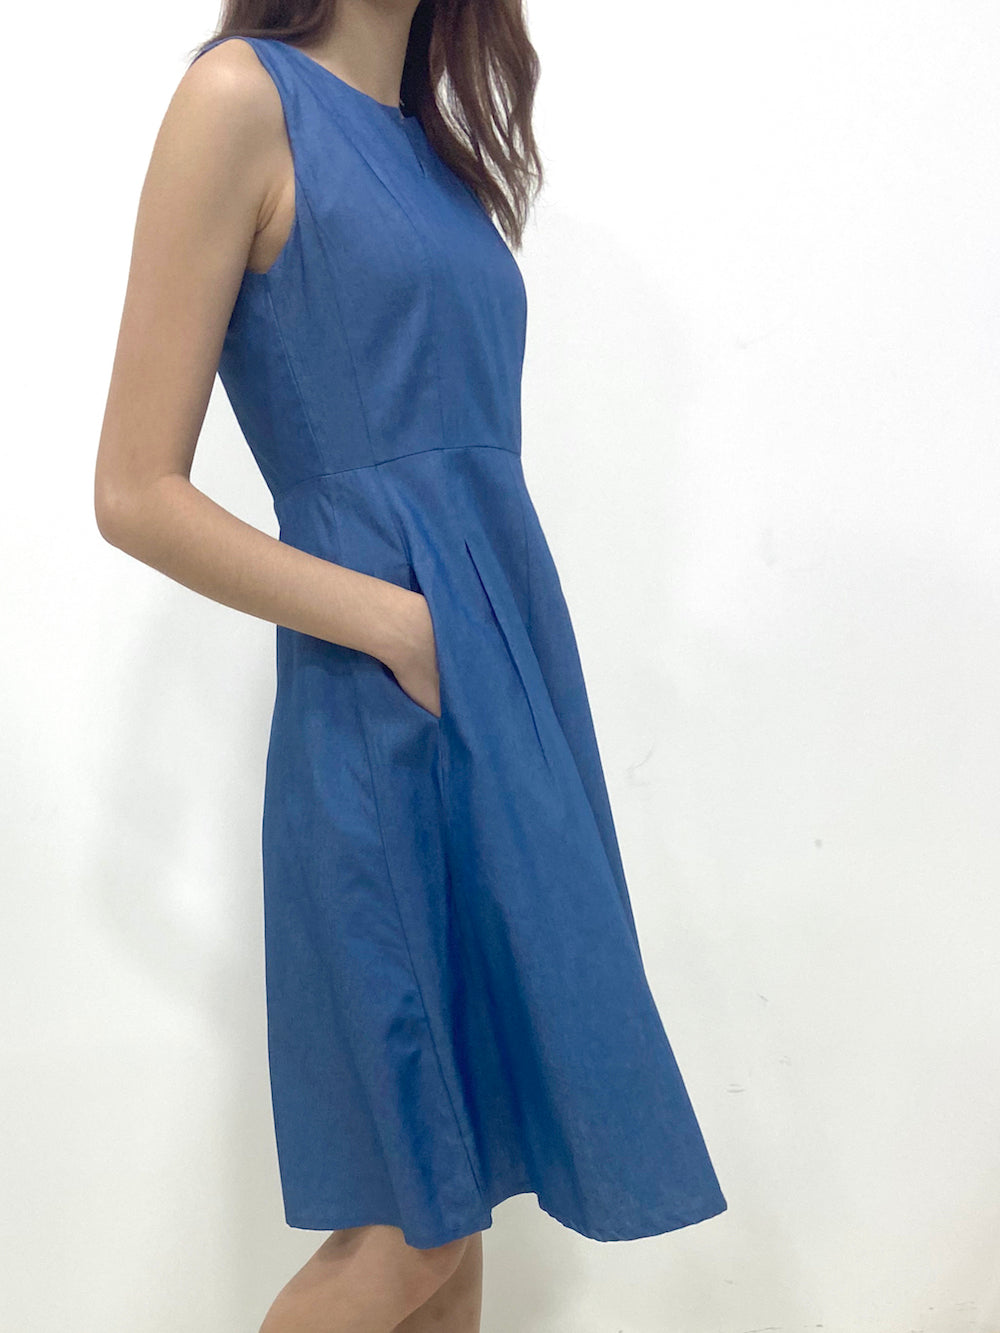 Slit Neckline A Line Dress (Non-returnable) - Ferlicious